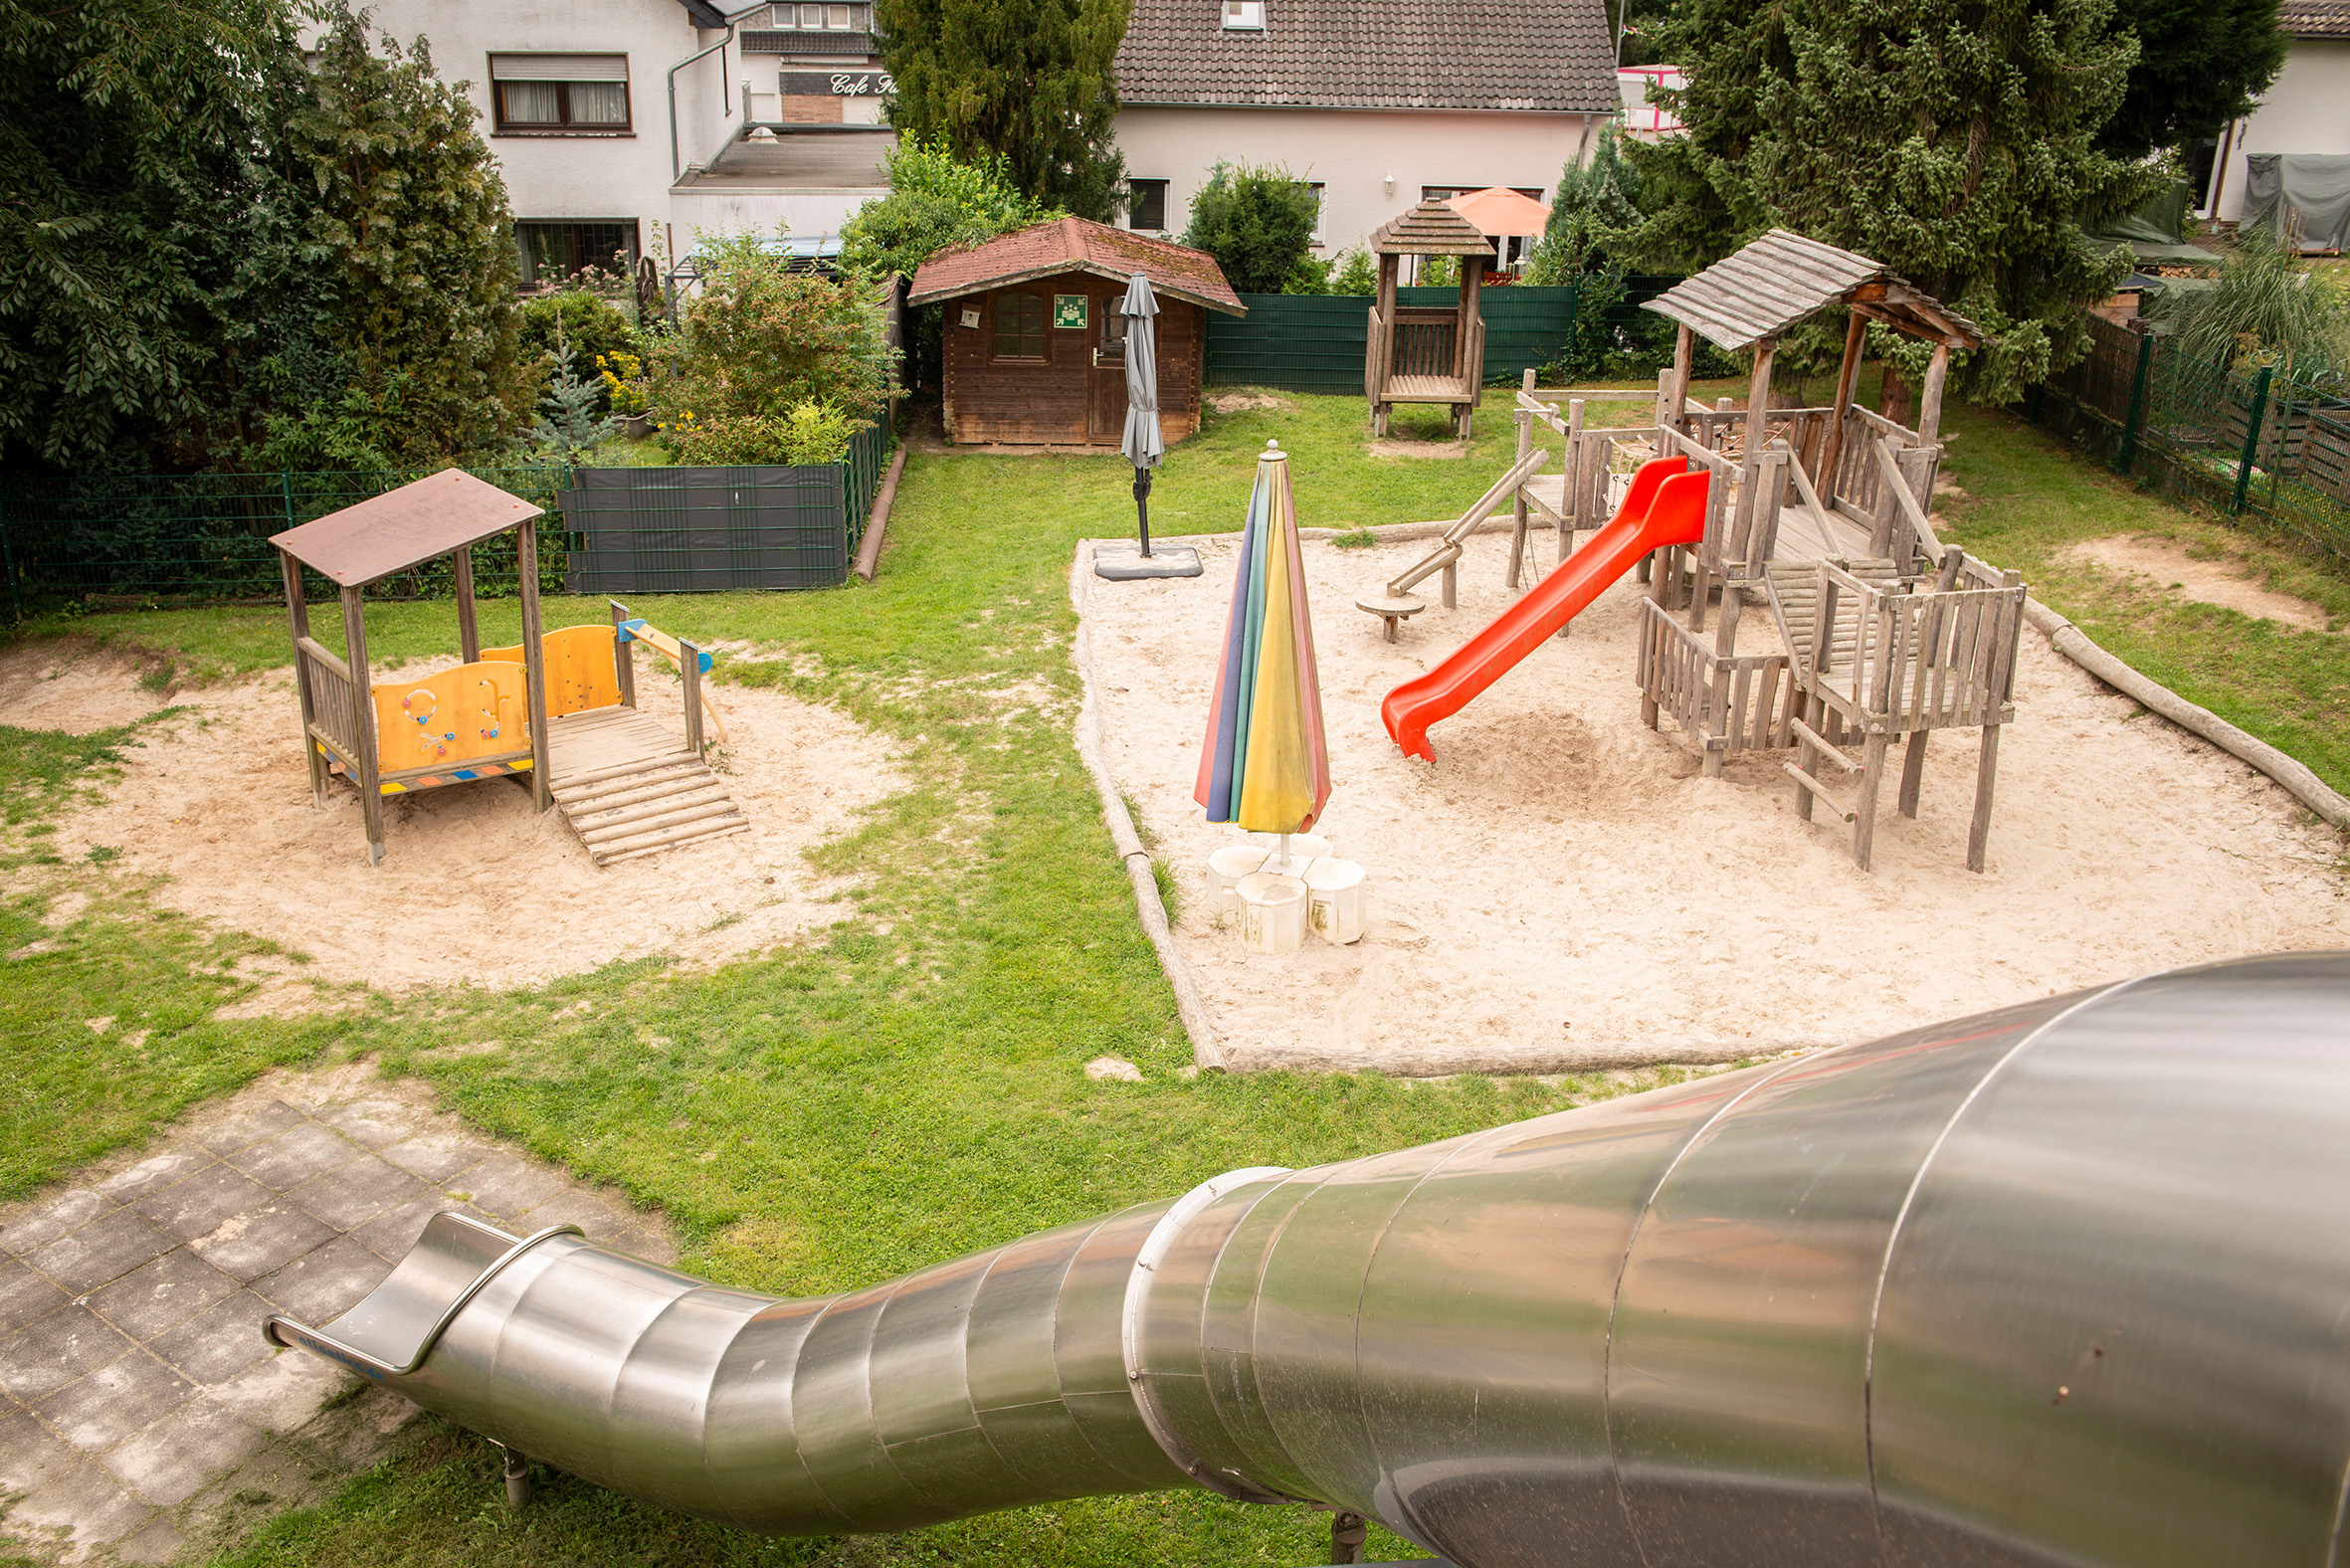 Sachsenheim - Kindergarten Villa Sonnenschein